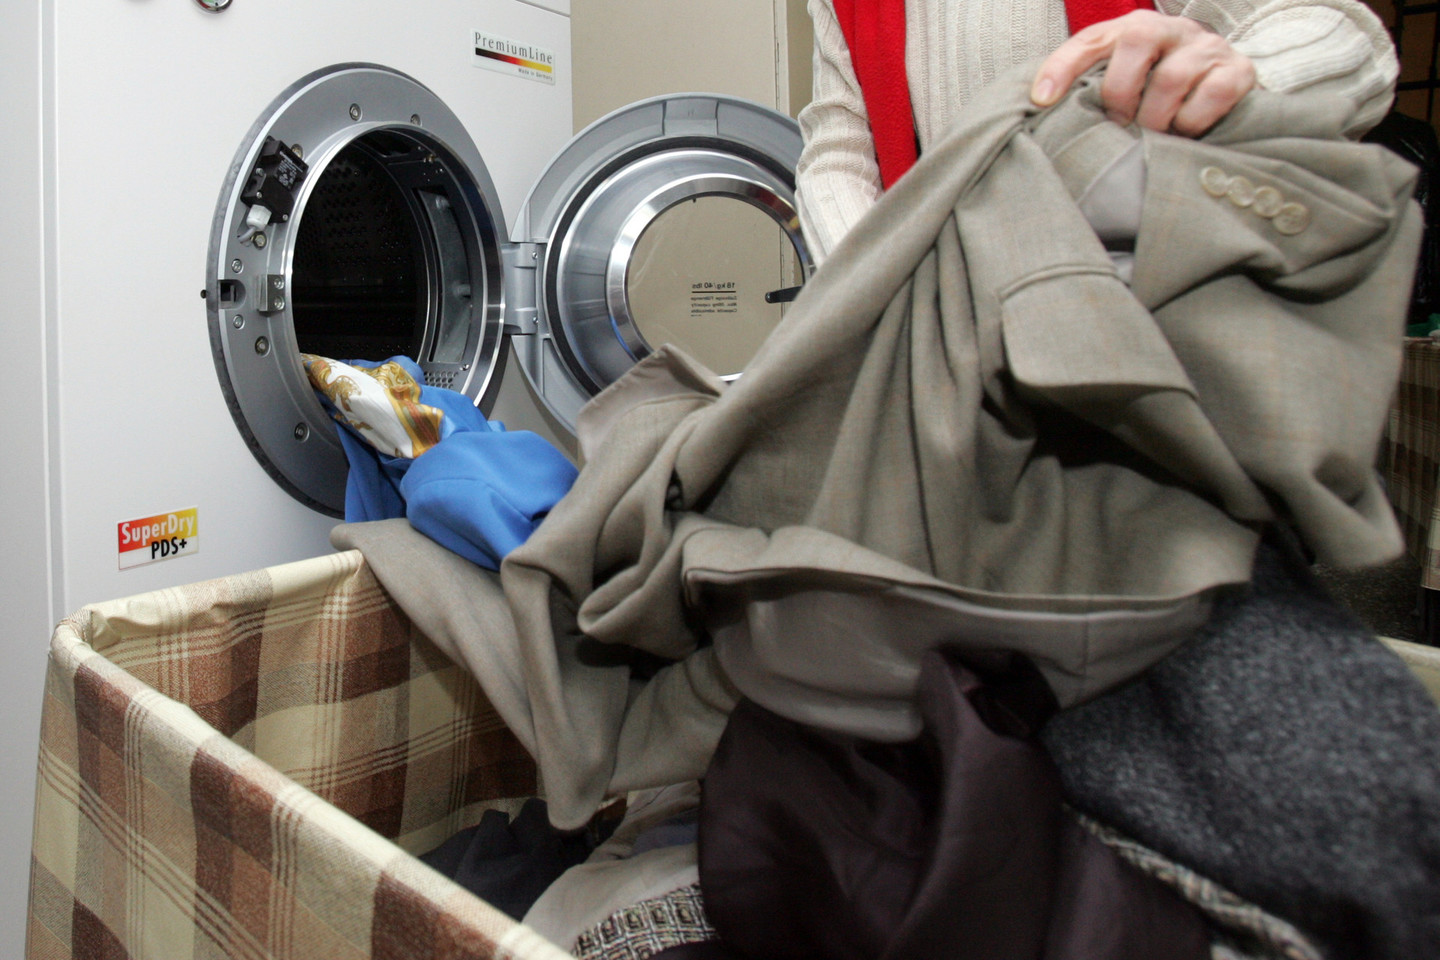 Cheminis drabužių valymas – viena tų paslaugų, kurios labiausiai pabrango.<br>T.Bauro nuotr.